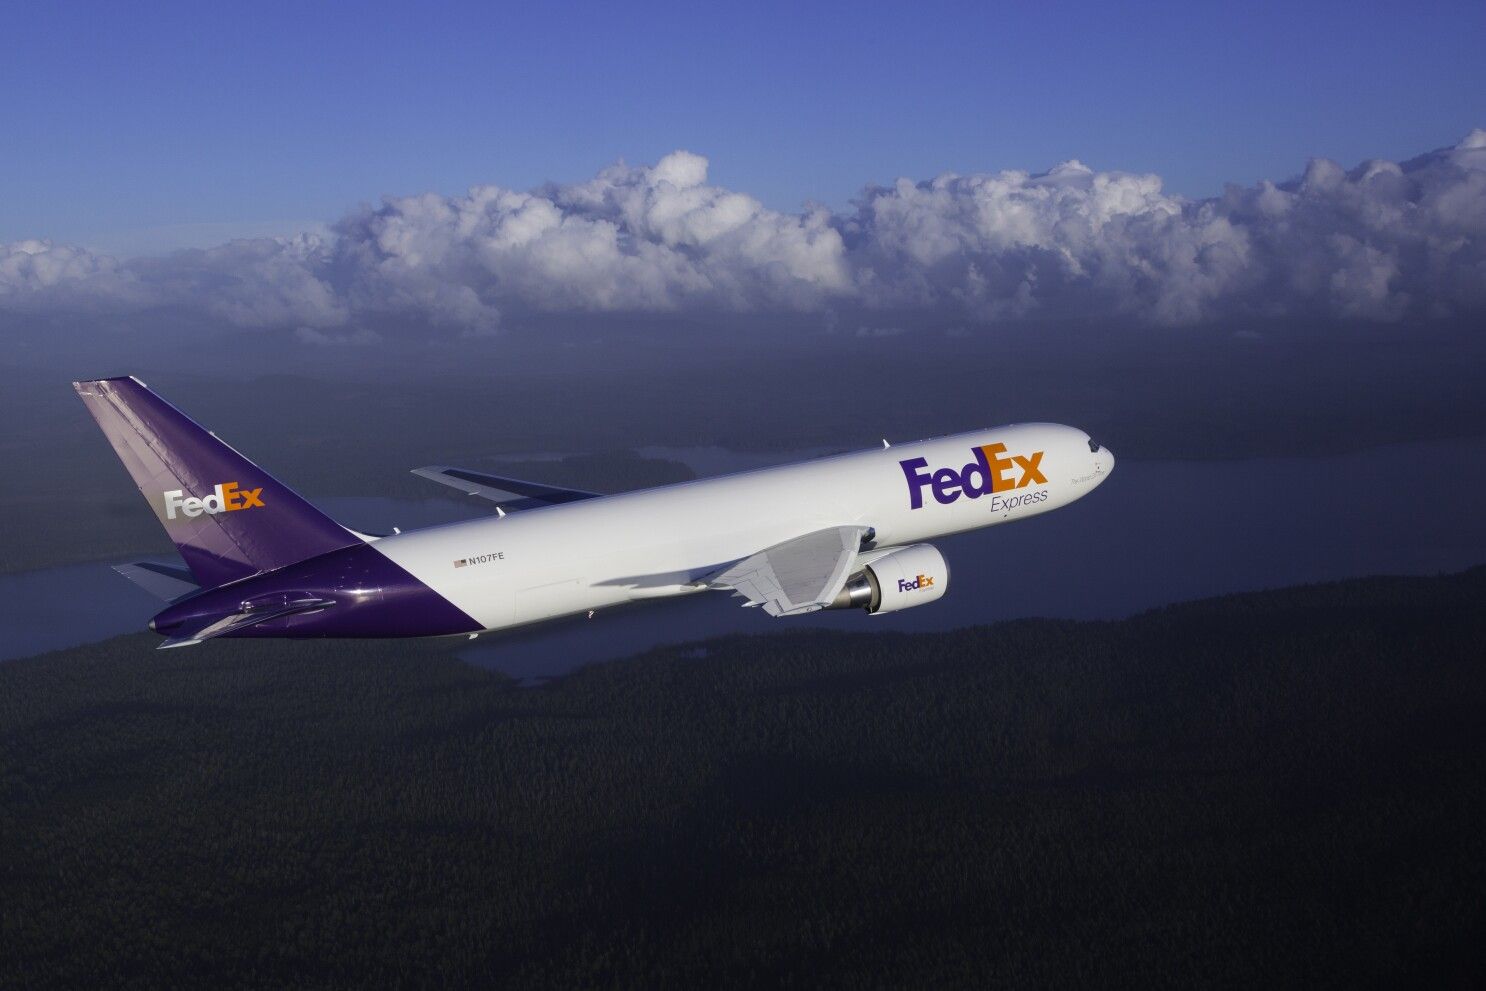 FedEx lleva a cabo un proceso de renovación de su flota, sobre todo con aviones Boeing, para reducir costes y mejorar la fiabilidad y la adaptabilidad operativa. FedEx is in the process of renewing its fleet, primarily with Boeing aircraft, to reduce costs and improve reliability and operational adaptability.